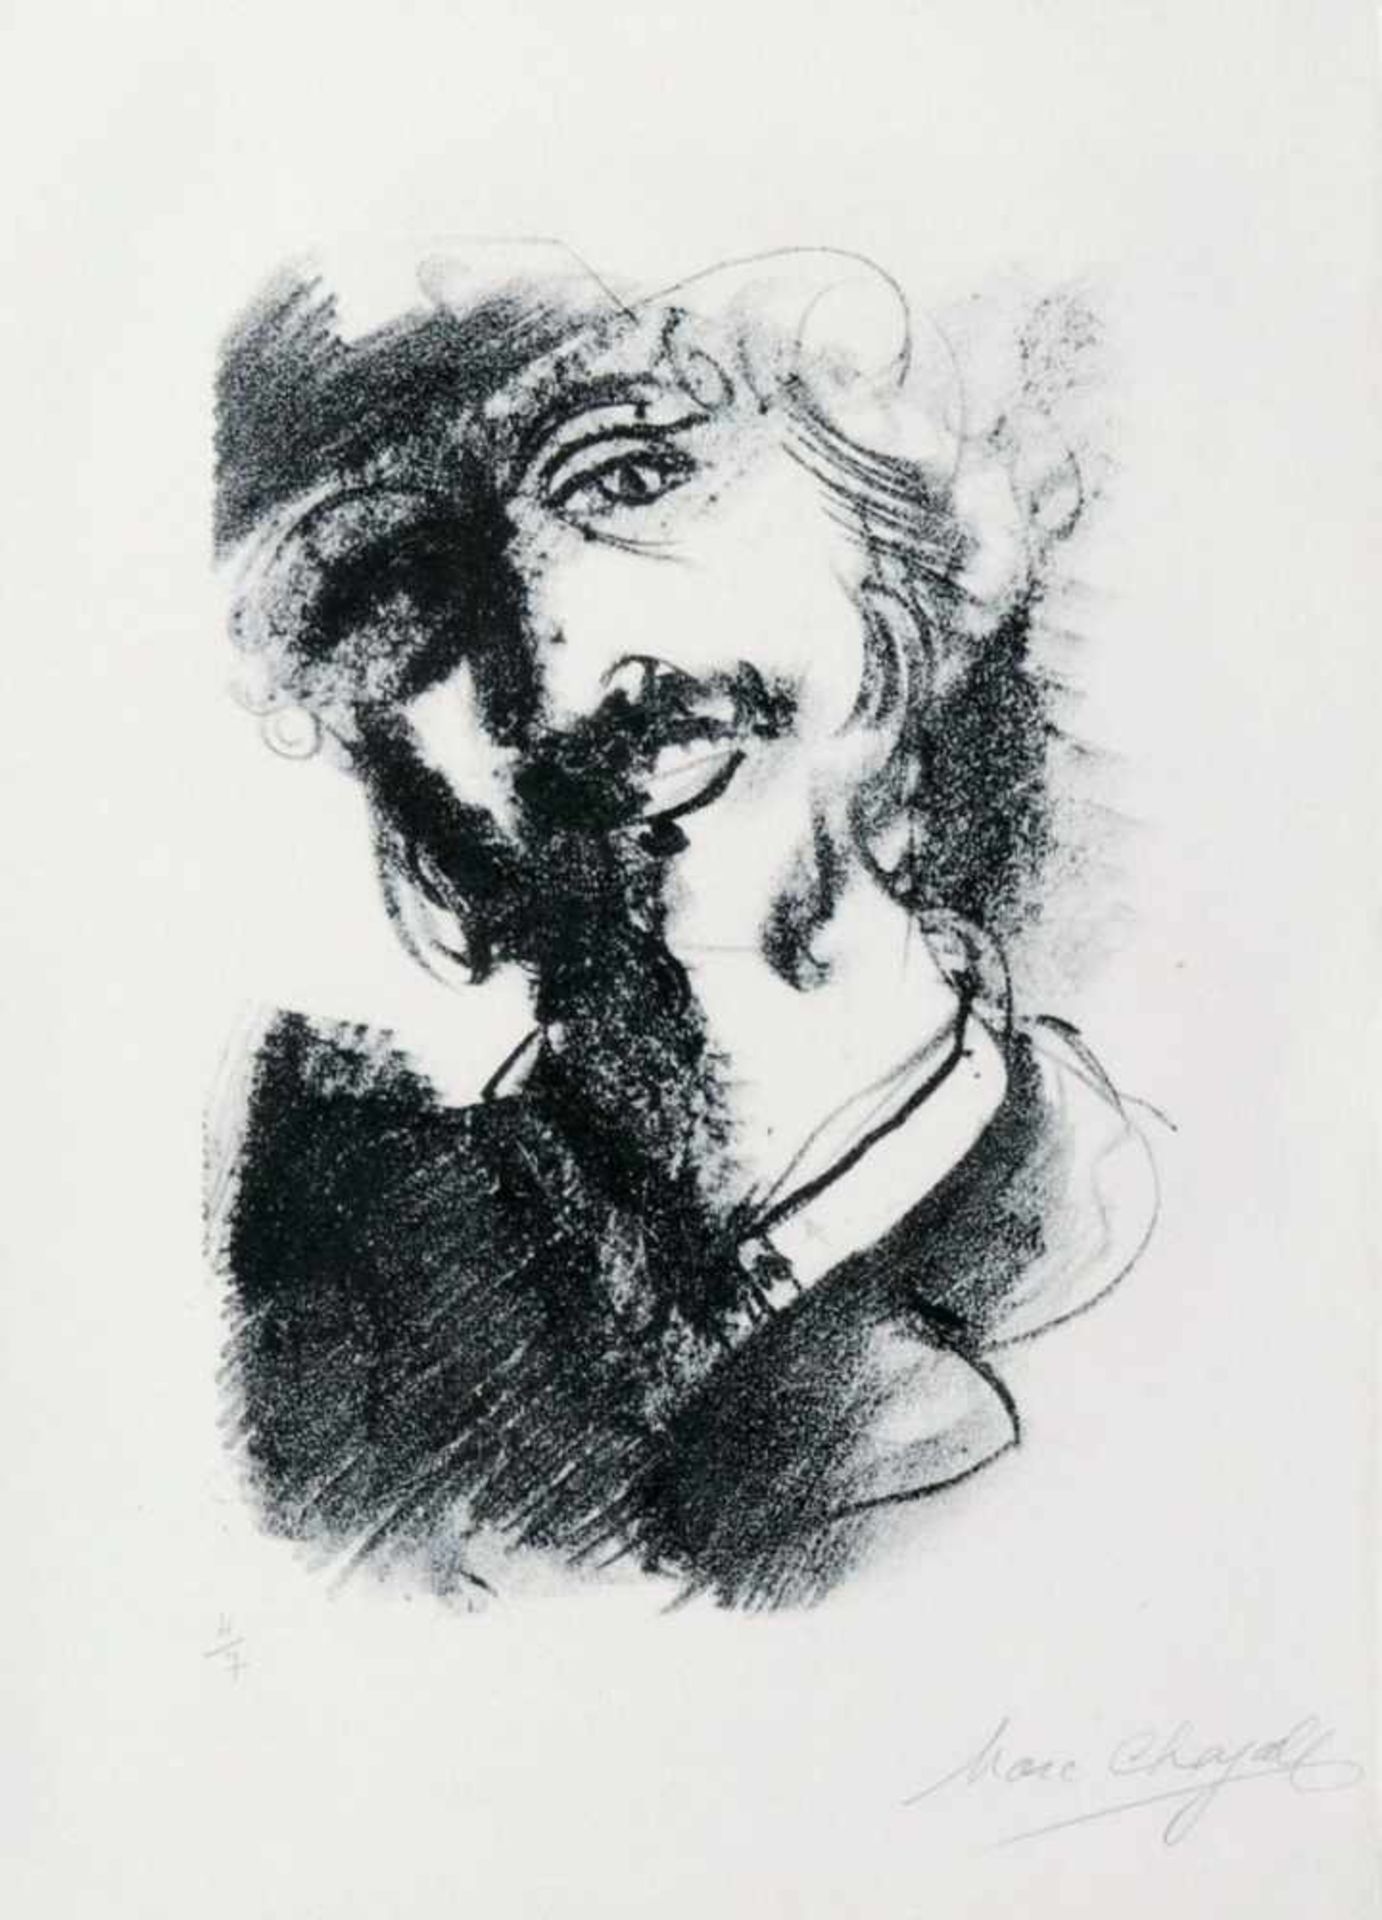 Marc Chagall(Witebsk 1887 - Paris 1985)Homme souriant à la tête penchée1922/56, Lithographie, 27 x